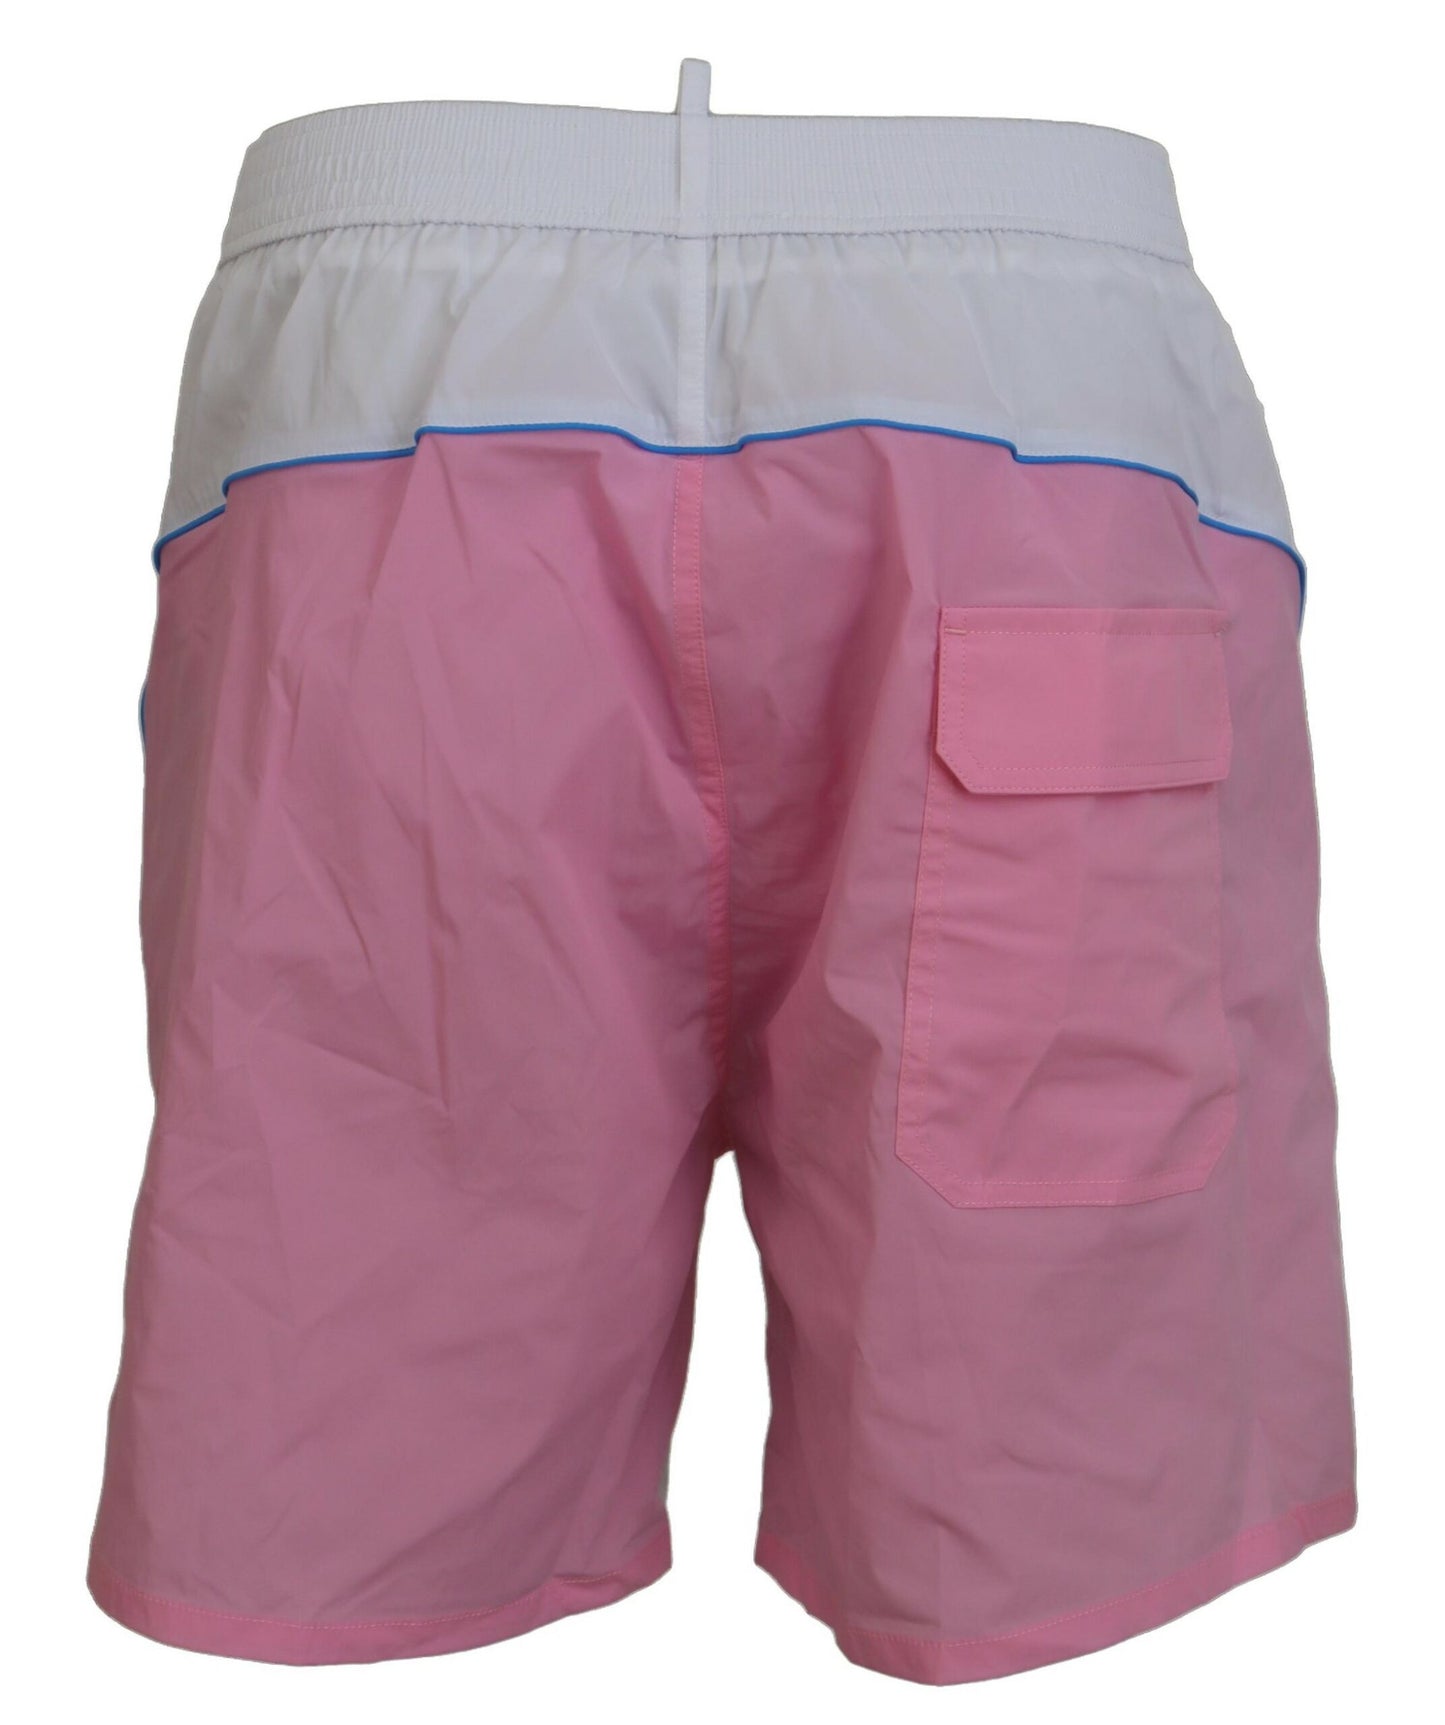 Dsquared² White Pink Logo Print Men Beachwear Shorts Badebekleidung